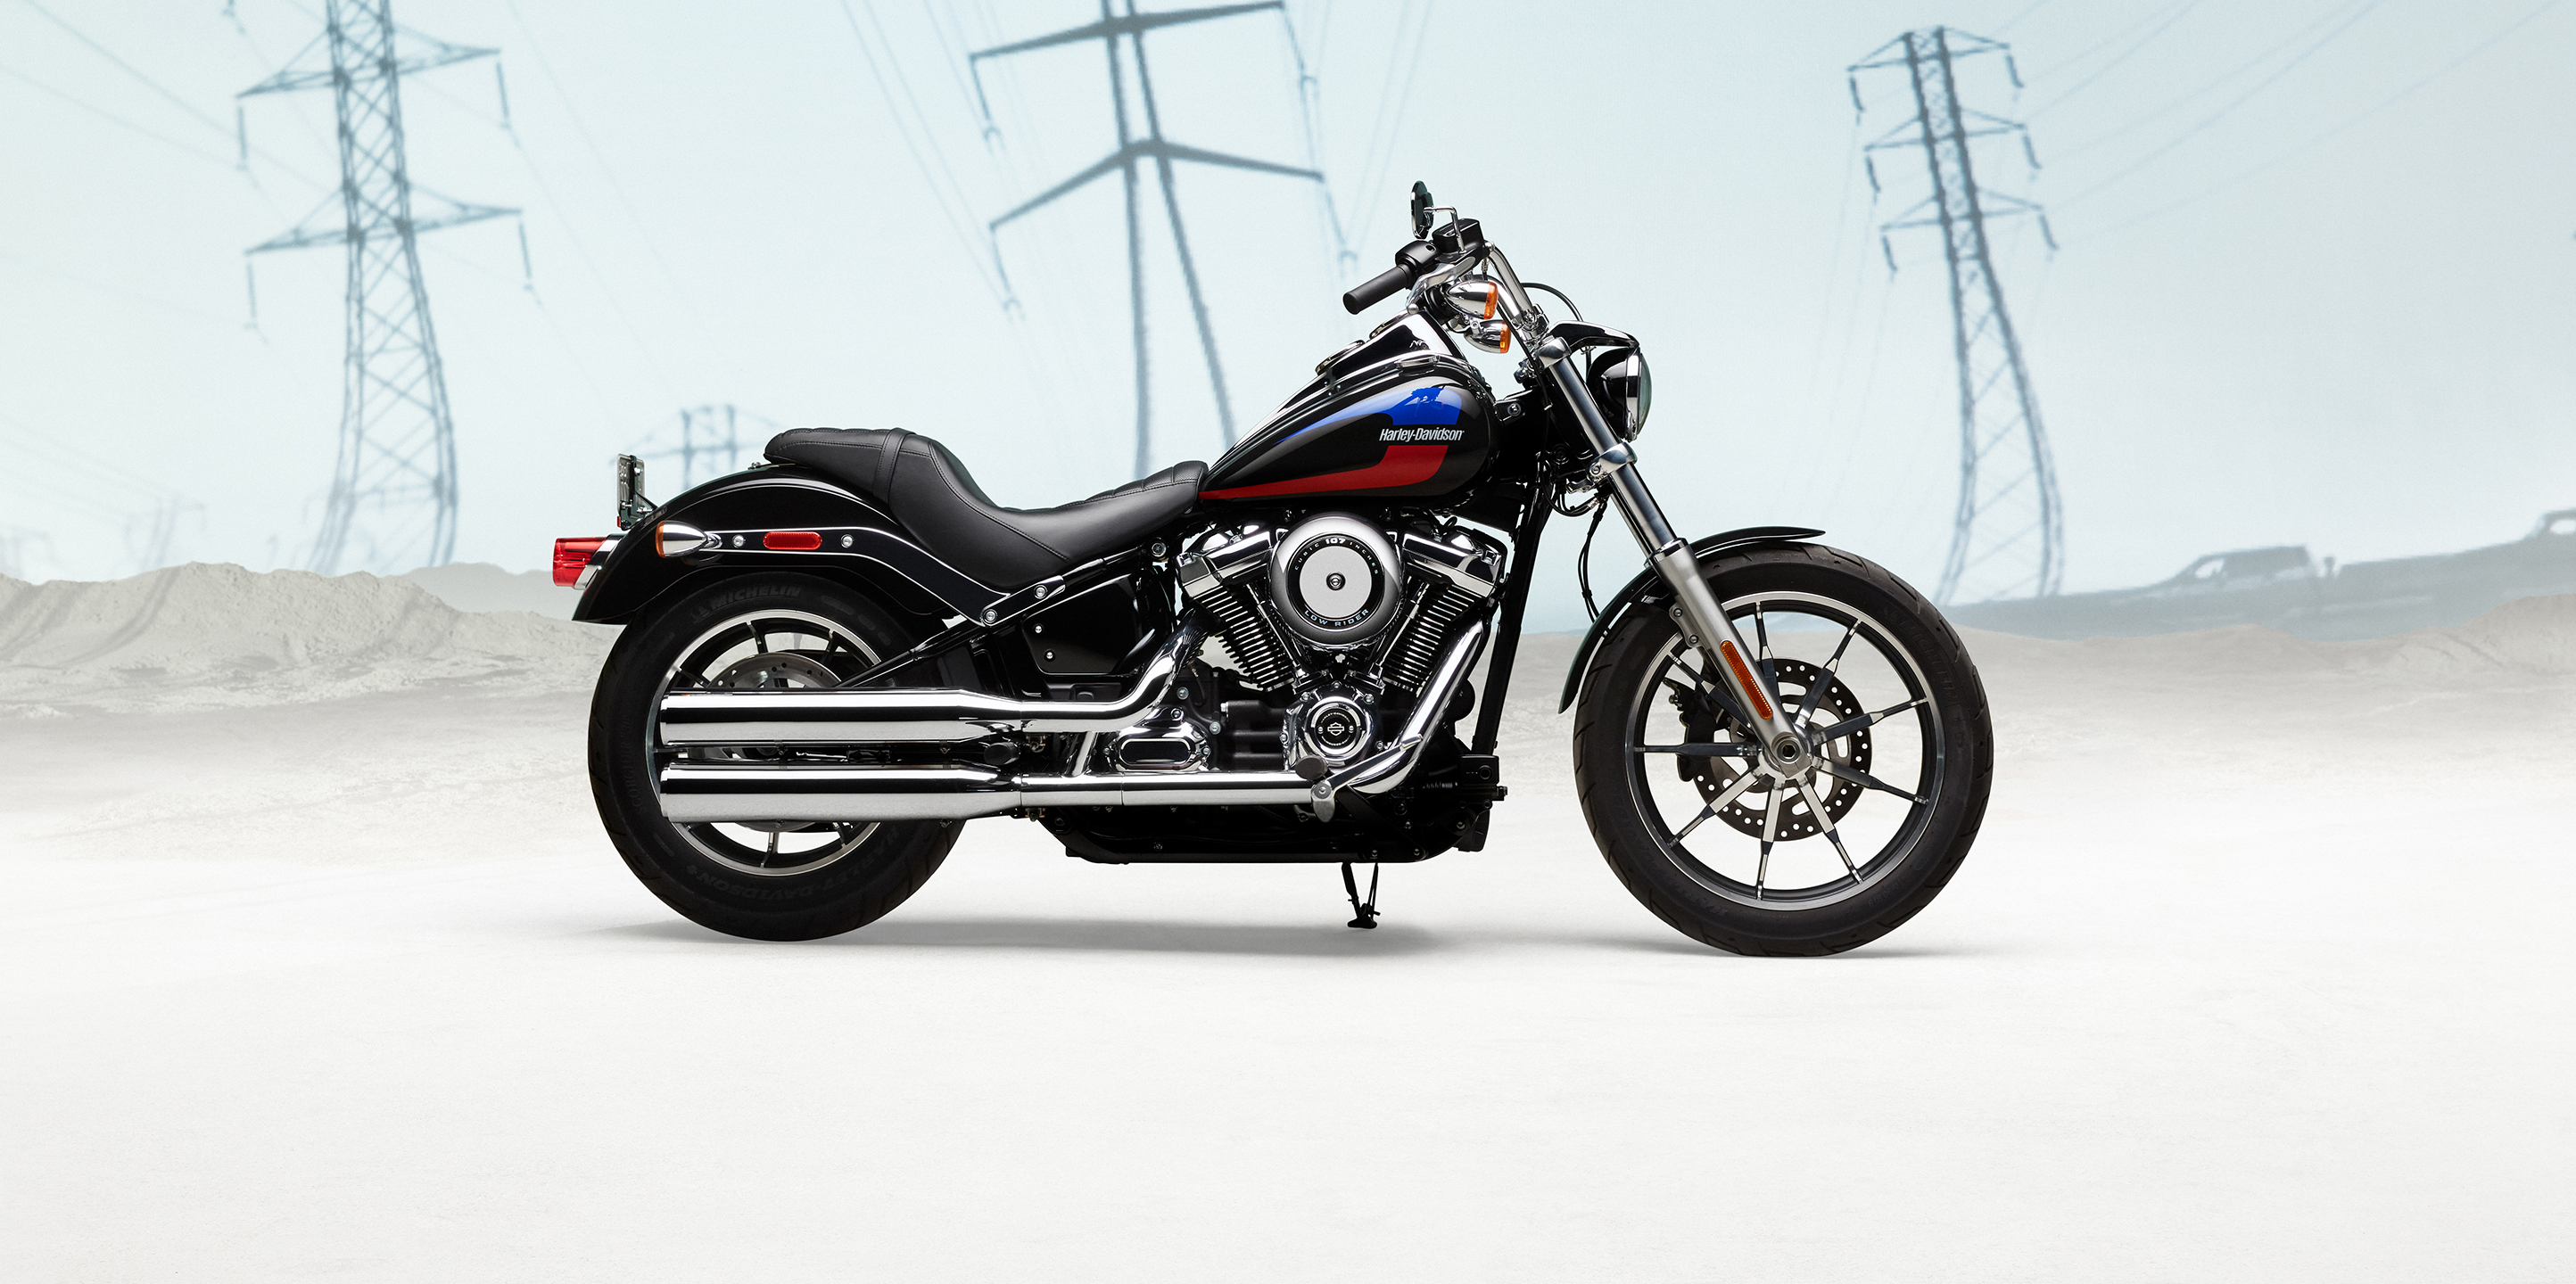  2020  Low  Rider  Motorcycle Harley  Davidson  USA